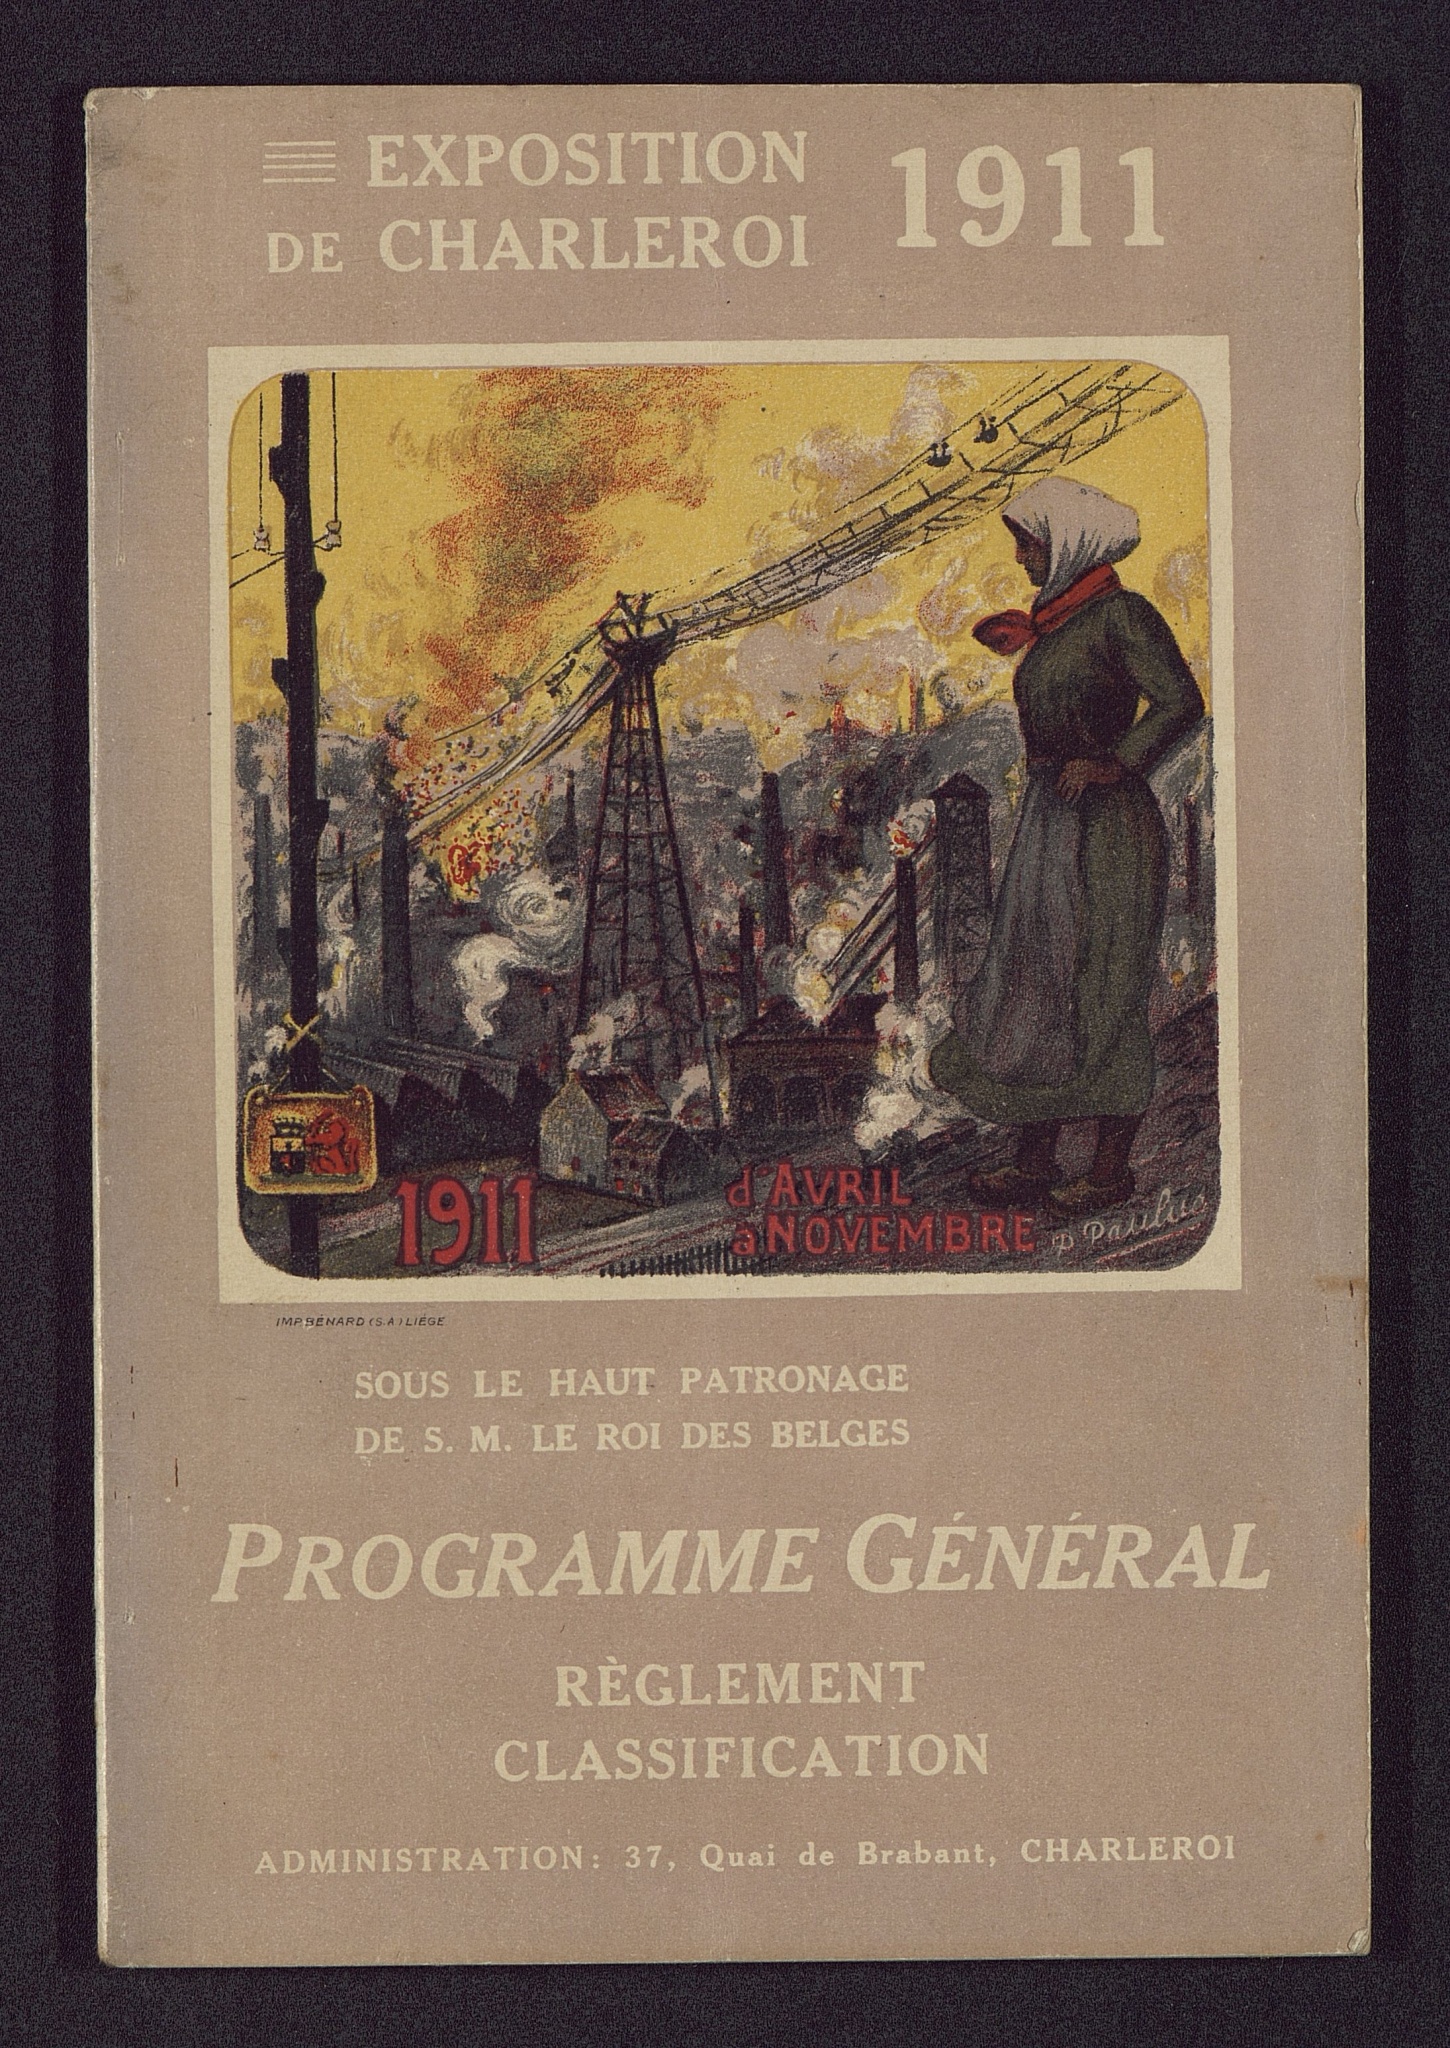 Programme général de l'Exposition de Charleroi en 1911